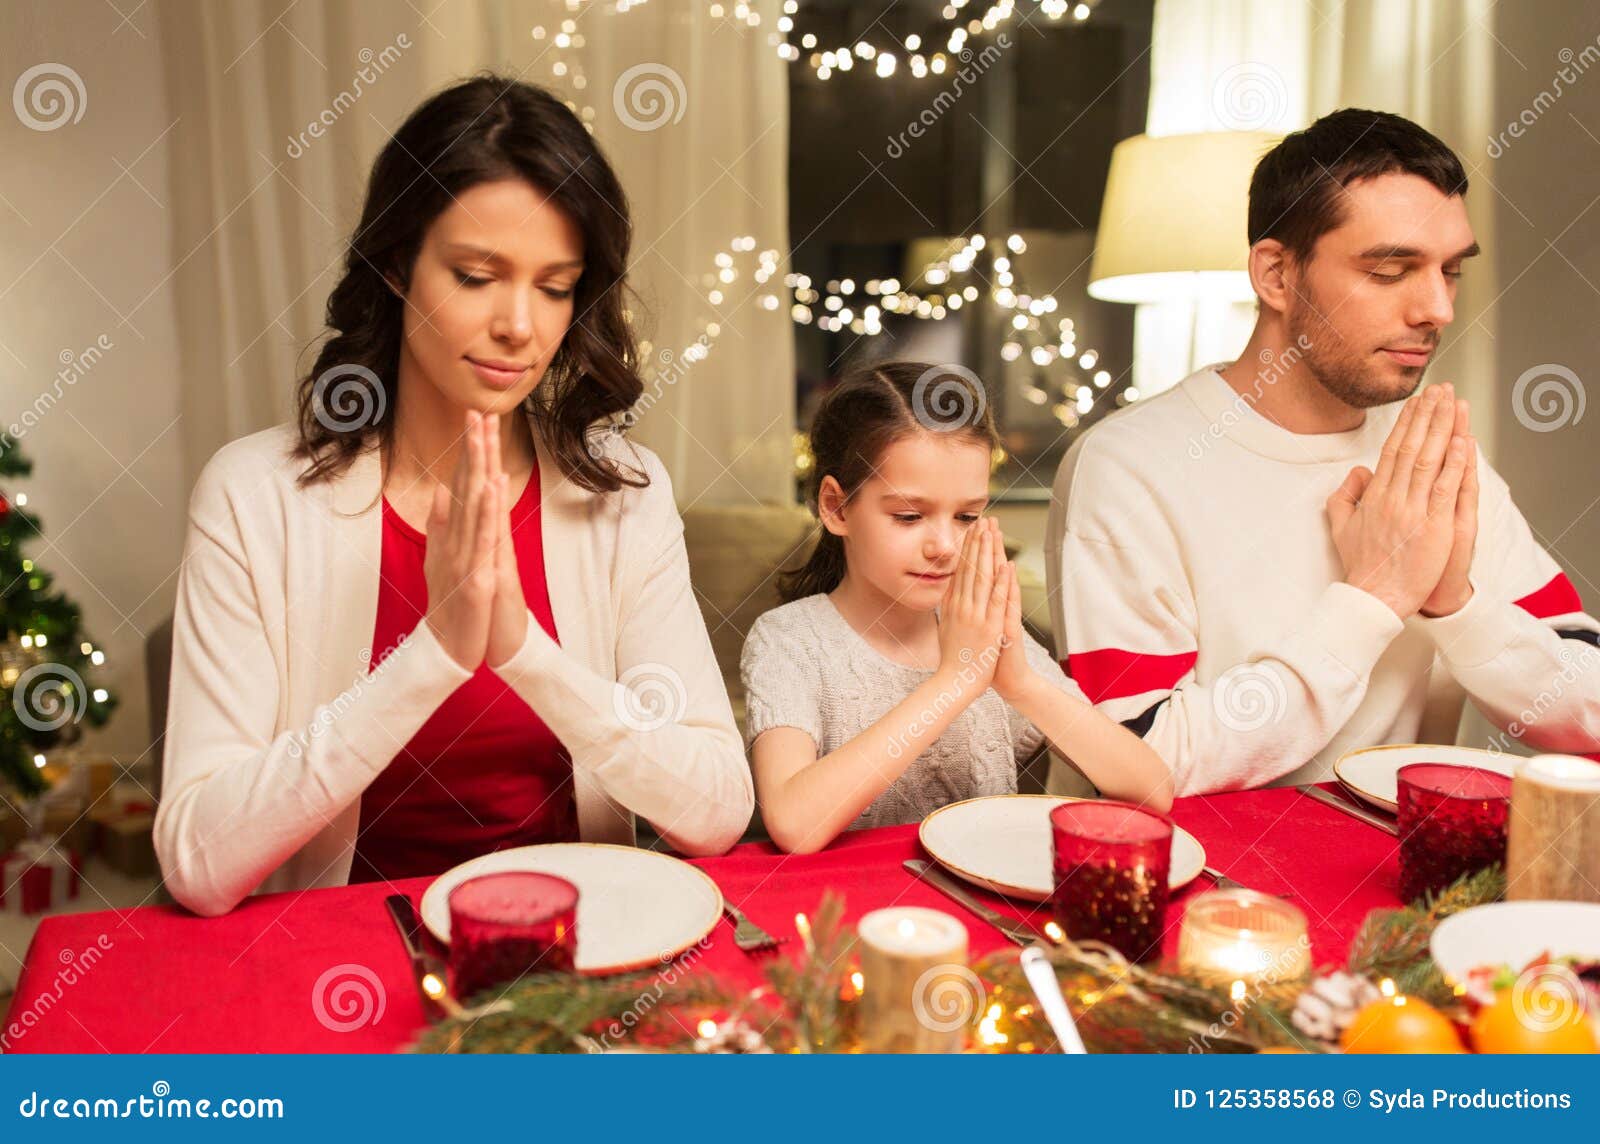 Pasti Di Natale.Famiglia Che Prega Prima Del Pasto Alla Cena Di Natale Fotografia Stock Immagine Di Bello Madre 125358568